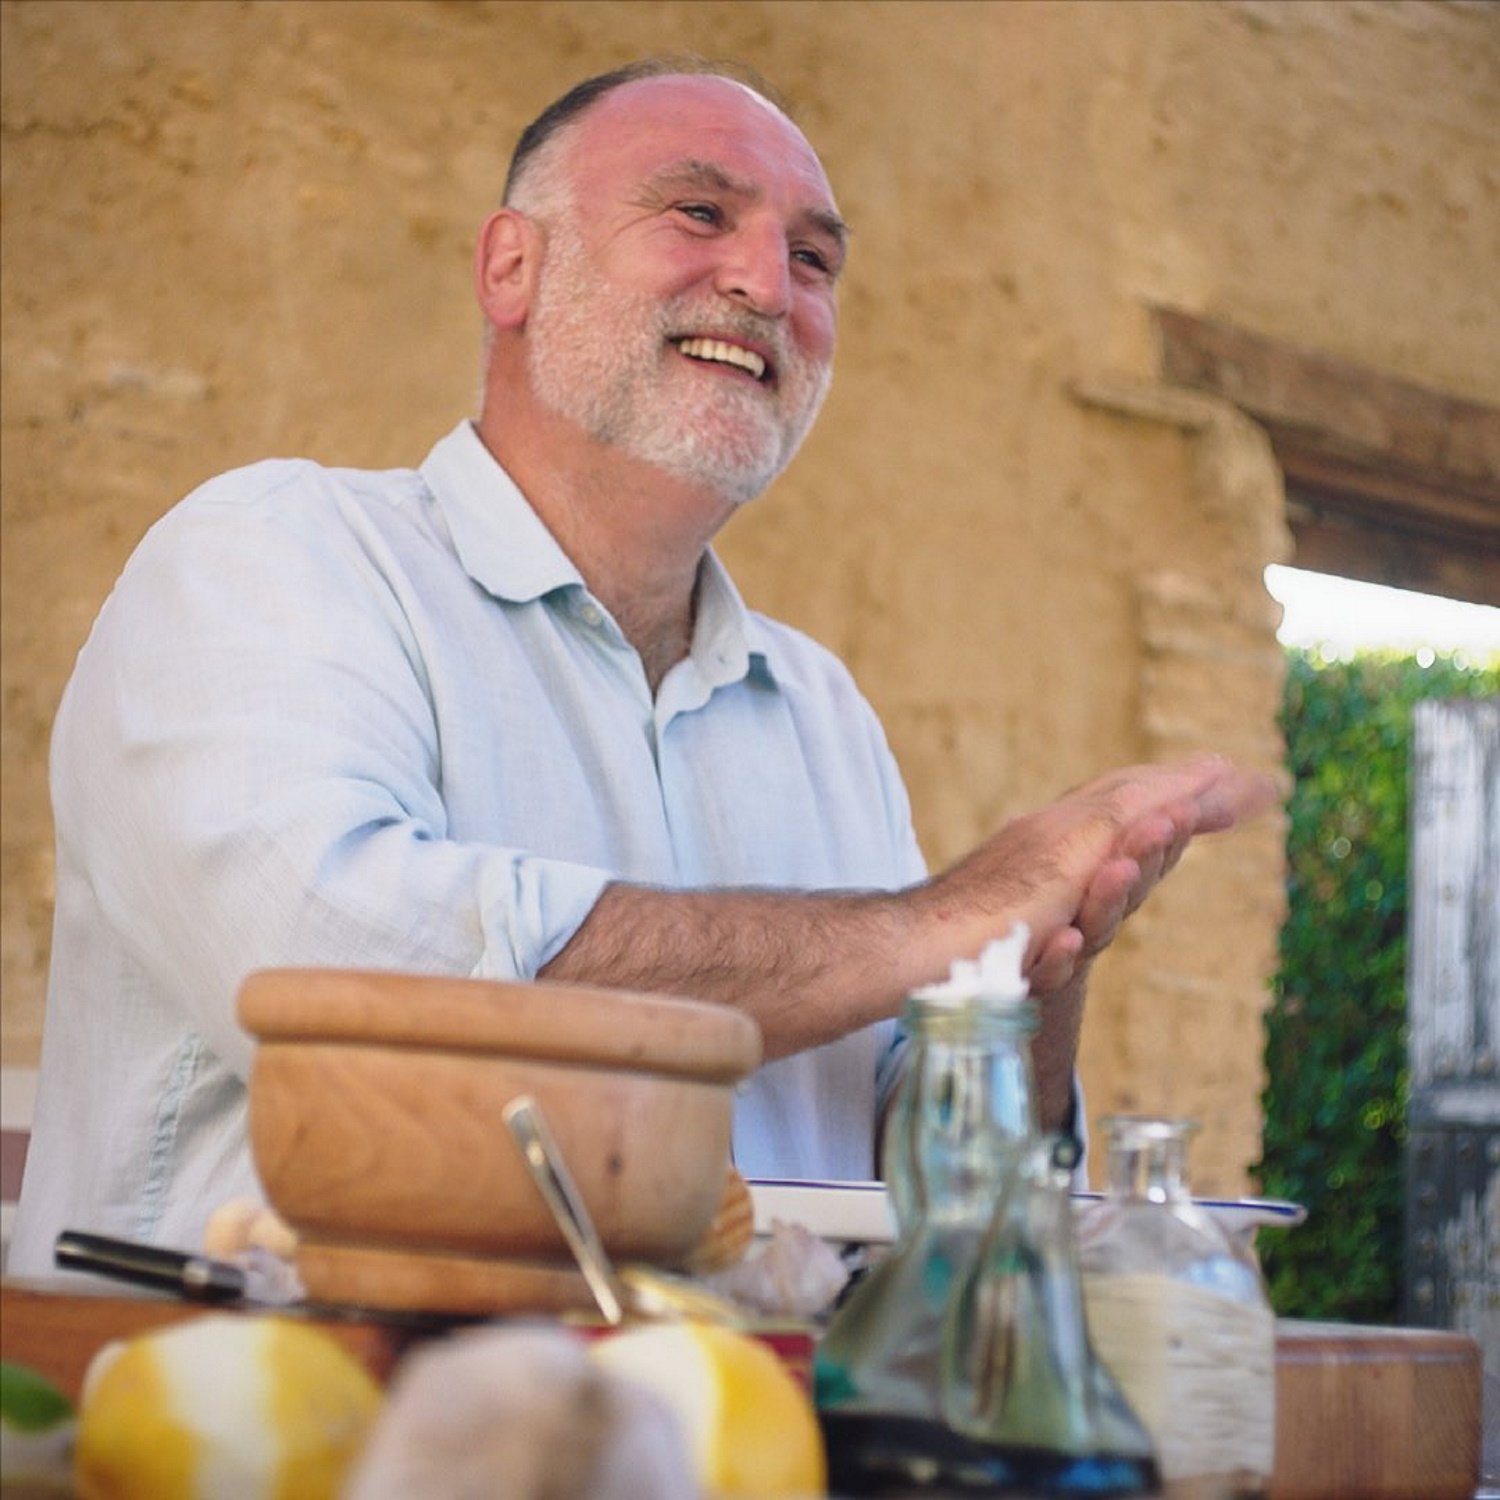 El chef español José Andrés, imagen emocionante en Vilafranca, hablando en catalán